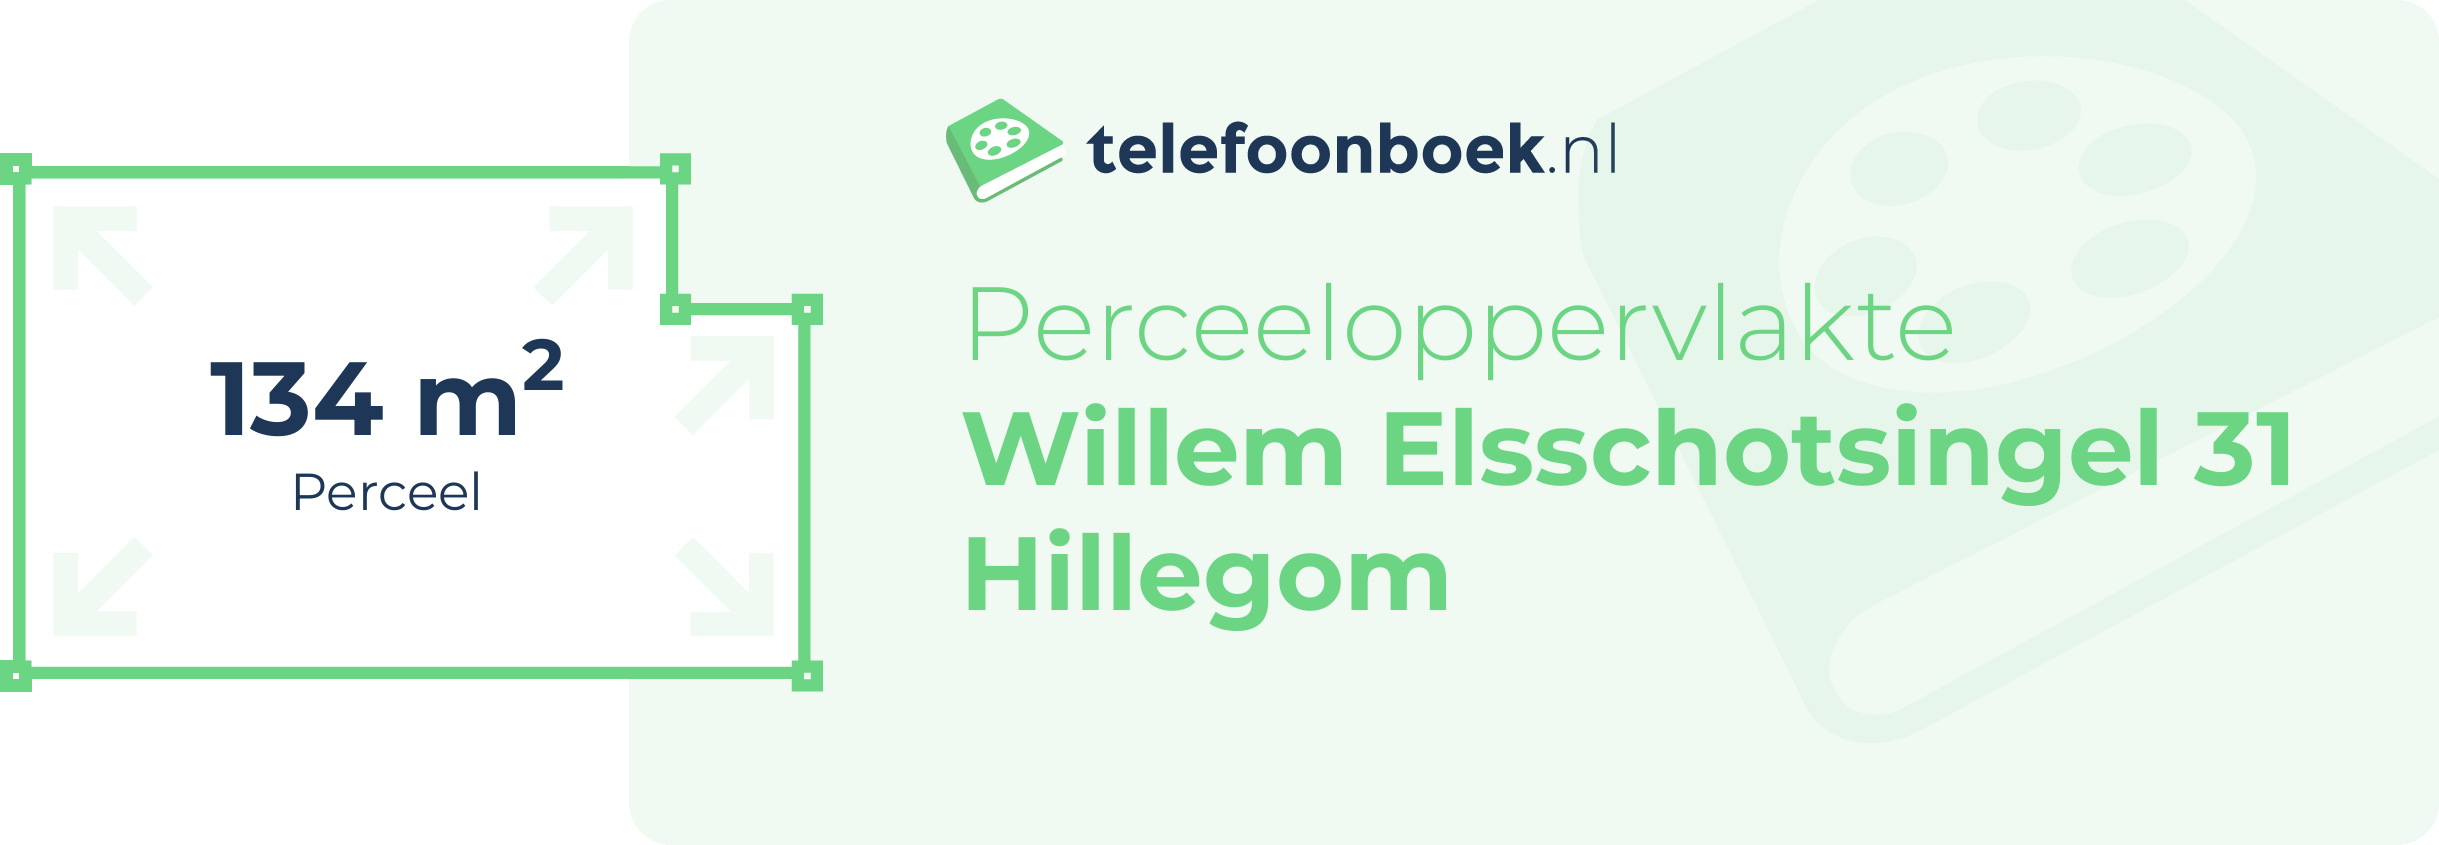 Perceeloppervlakte Willem Elsschotsingel 31 Hillegom